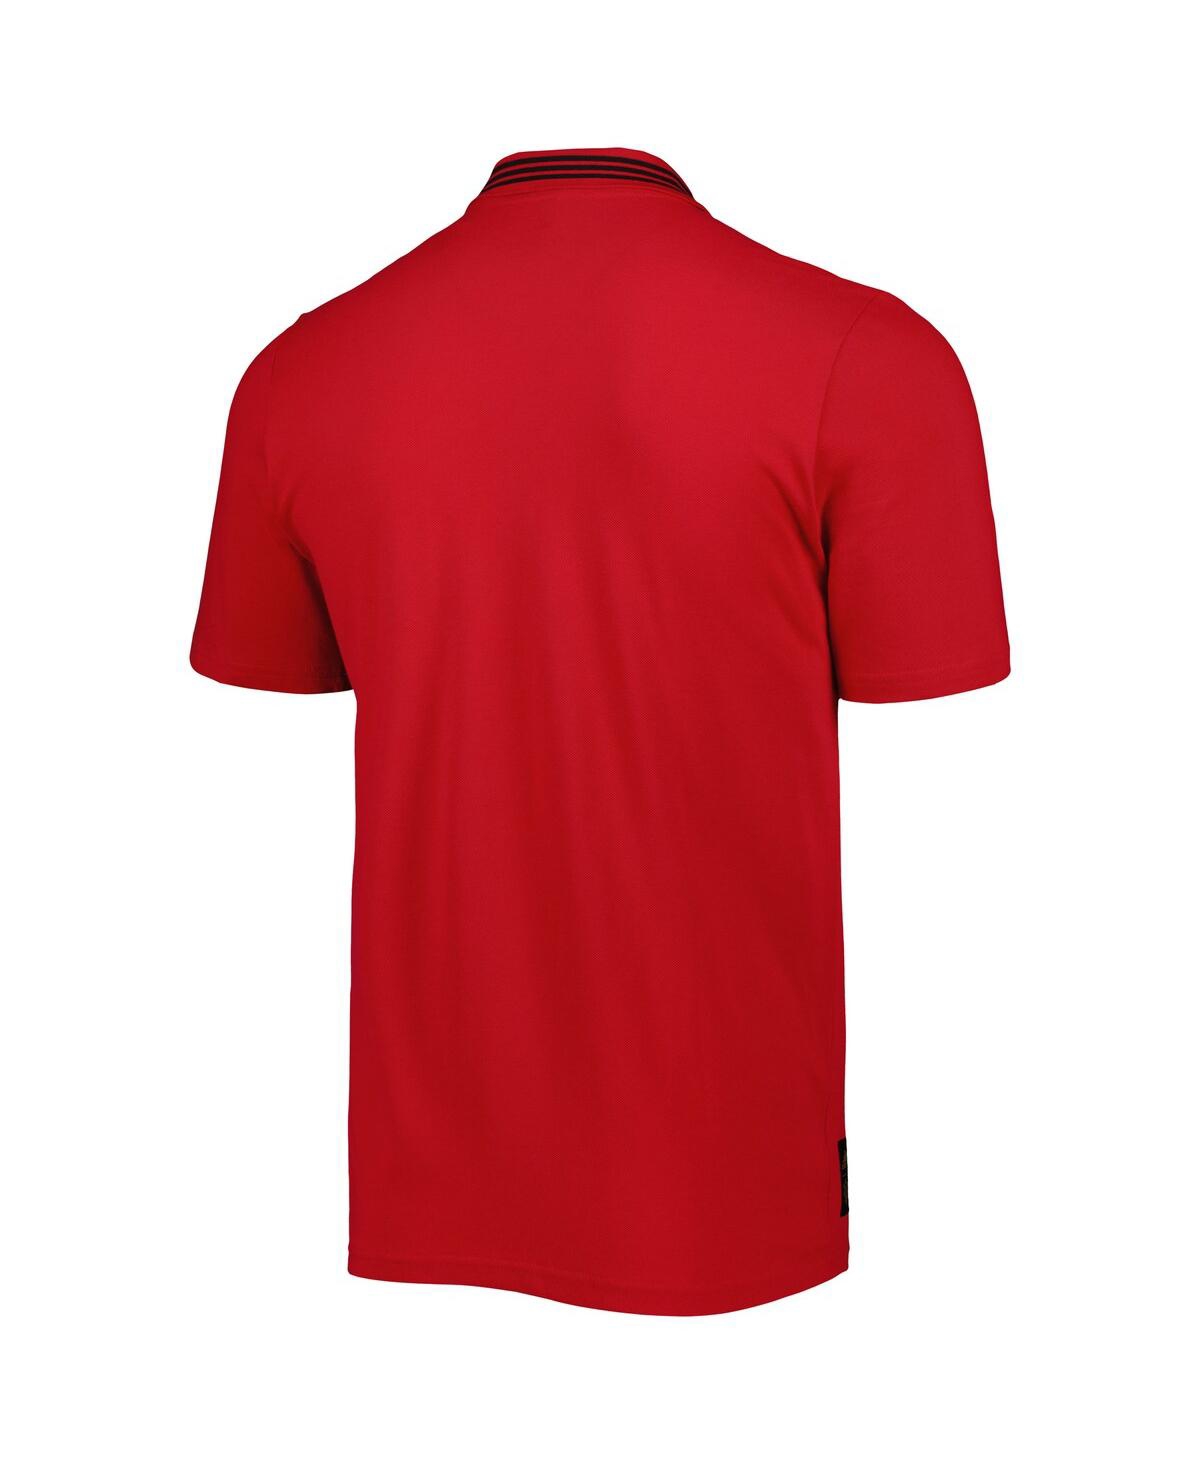 Shop Adidas Originals Men's Adidas Red Manchester United Club Polo Shirt